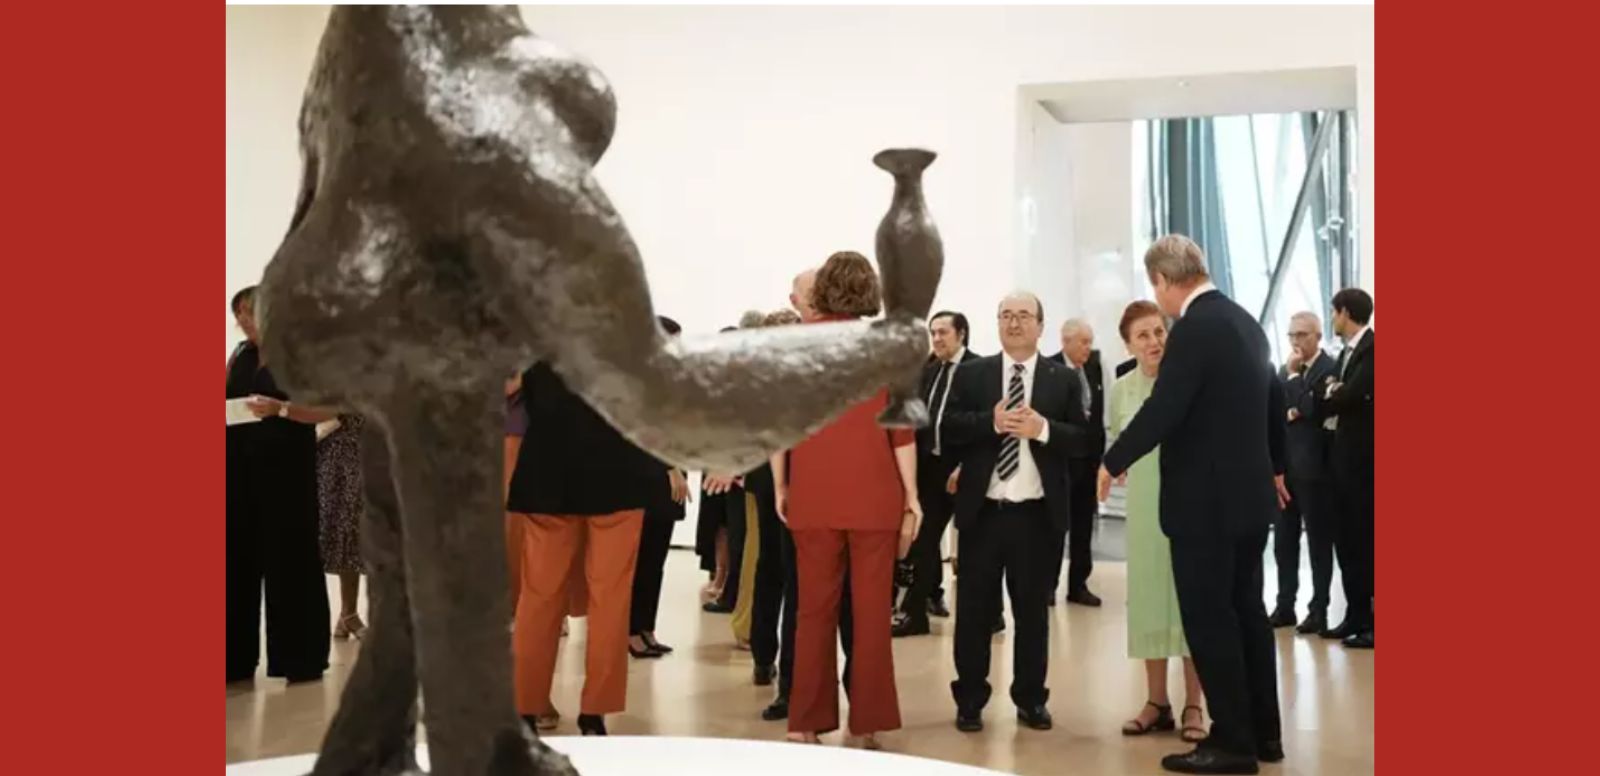 El ministro de cultura y Deporte, Miquel Iceta (3d), asiste a la inauguración de la exposición "Picasso Escultor: materia y cuerpo" en el Museo Guggenheim de Bilbao